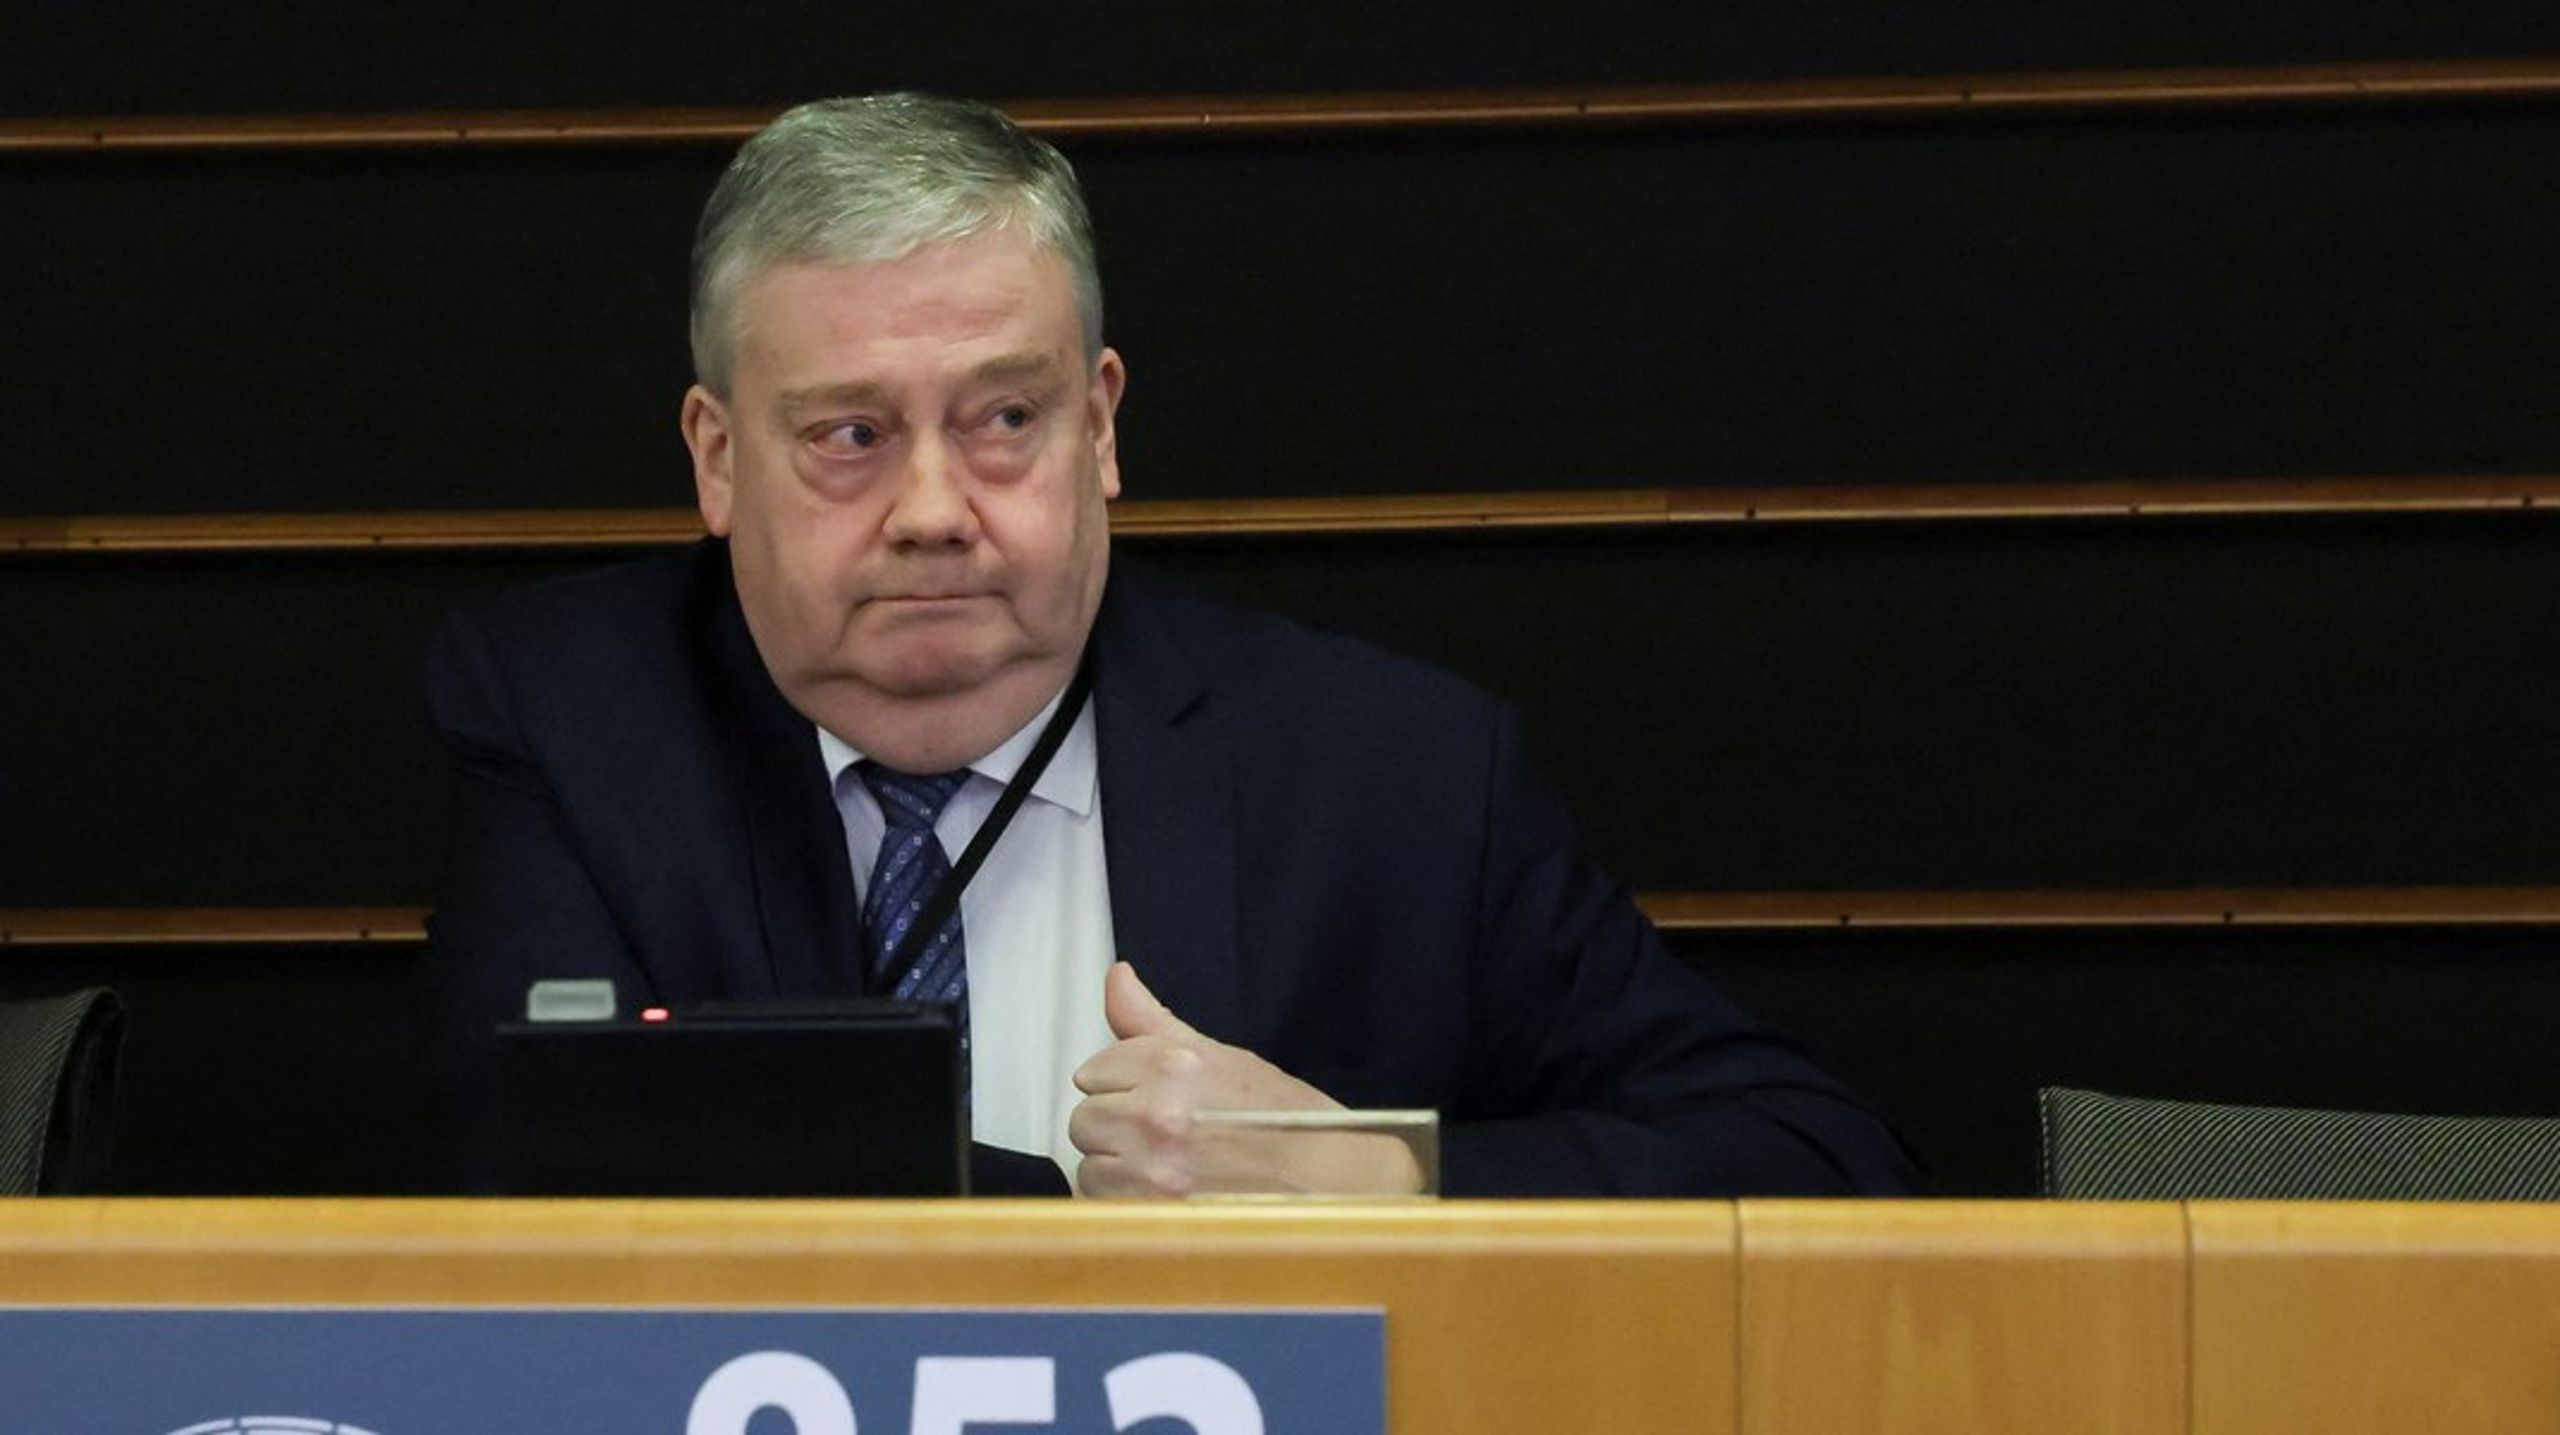 Belgiske Marc Tarabella er det andet medlem af Europa-Parlamentet, der bliver arresteret i forbindelse med undersøgelsen af&nbsp;Qatargate.